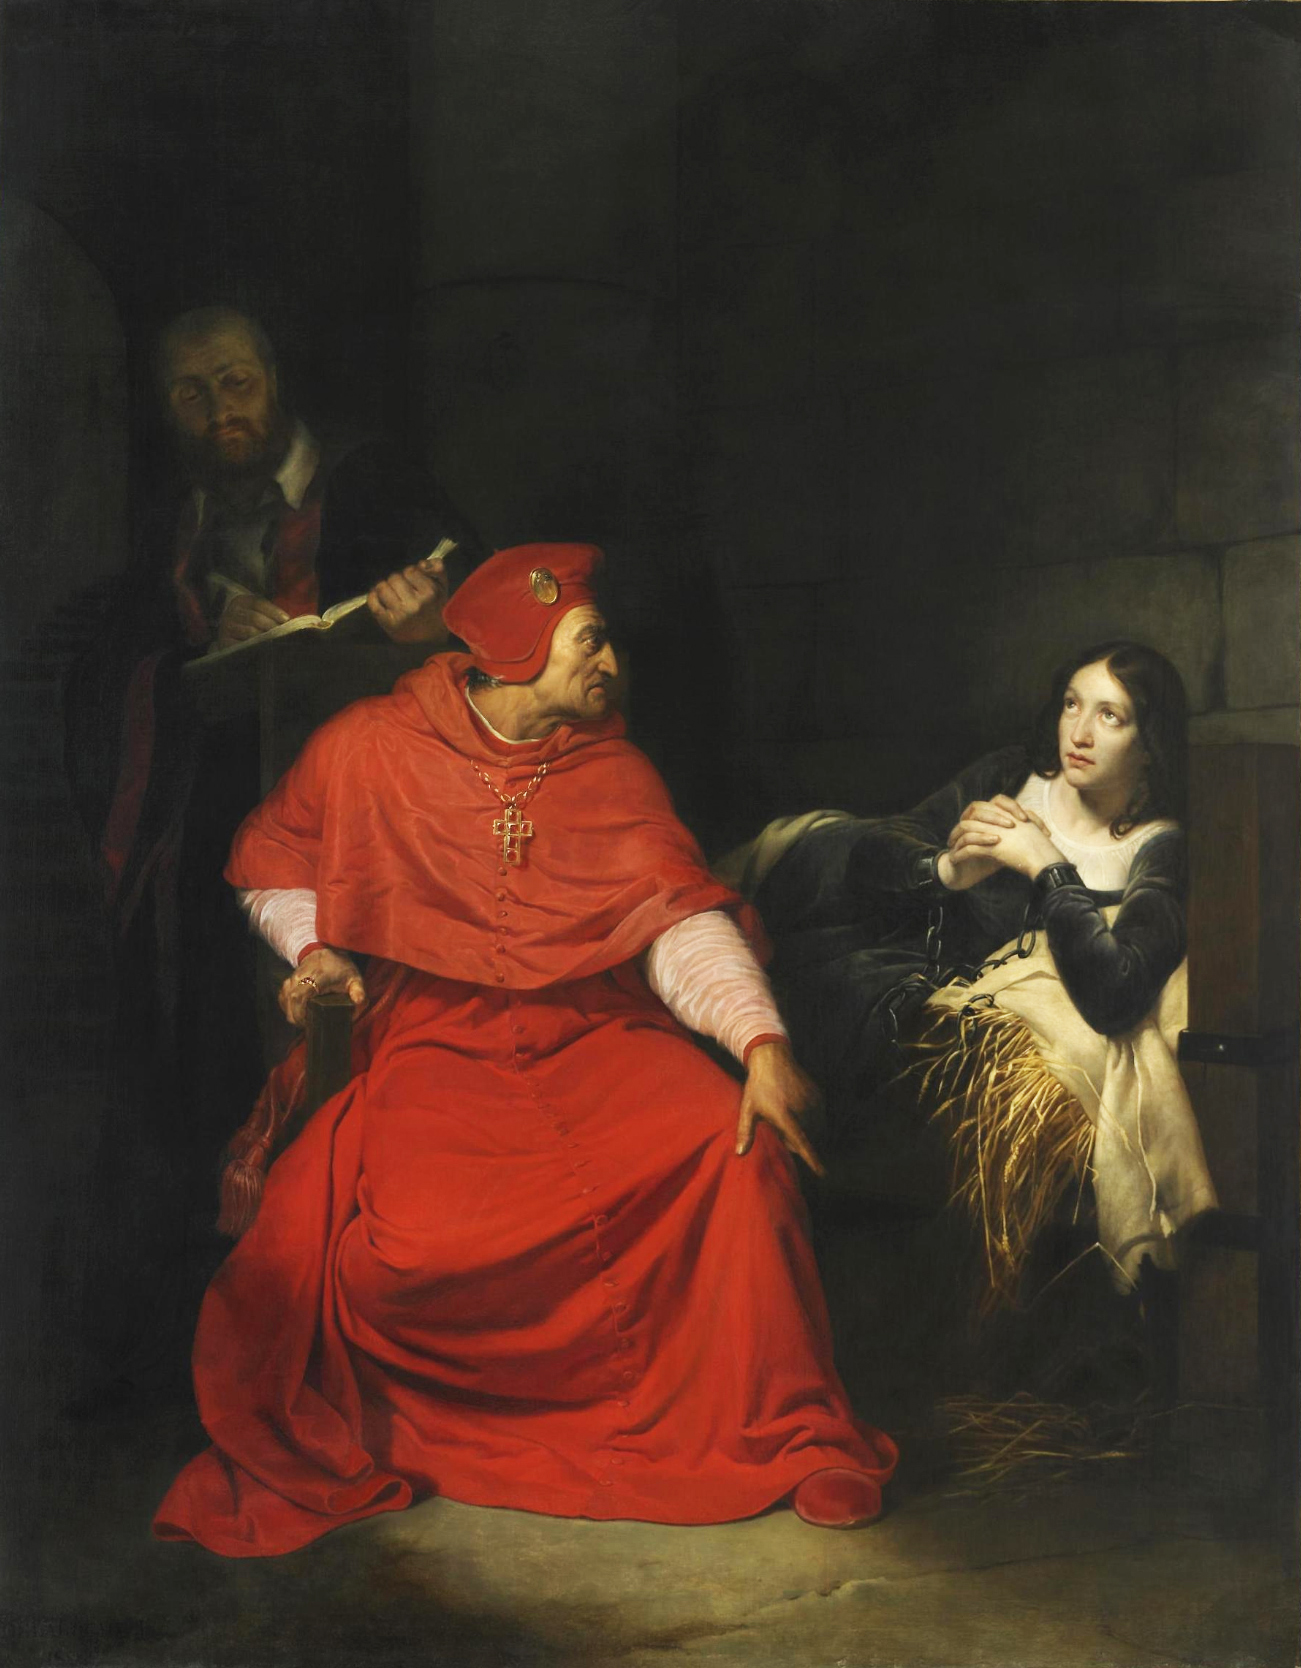 Η Ιωάννα της Λωρραίνης ανακρίνεται στη φυλακή από τον καρδινάλιο του Γουίντσεστερ, Πωλ ντε λα Ρος. Photo Credits: Wikimedia Commons